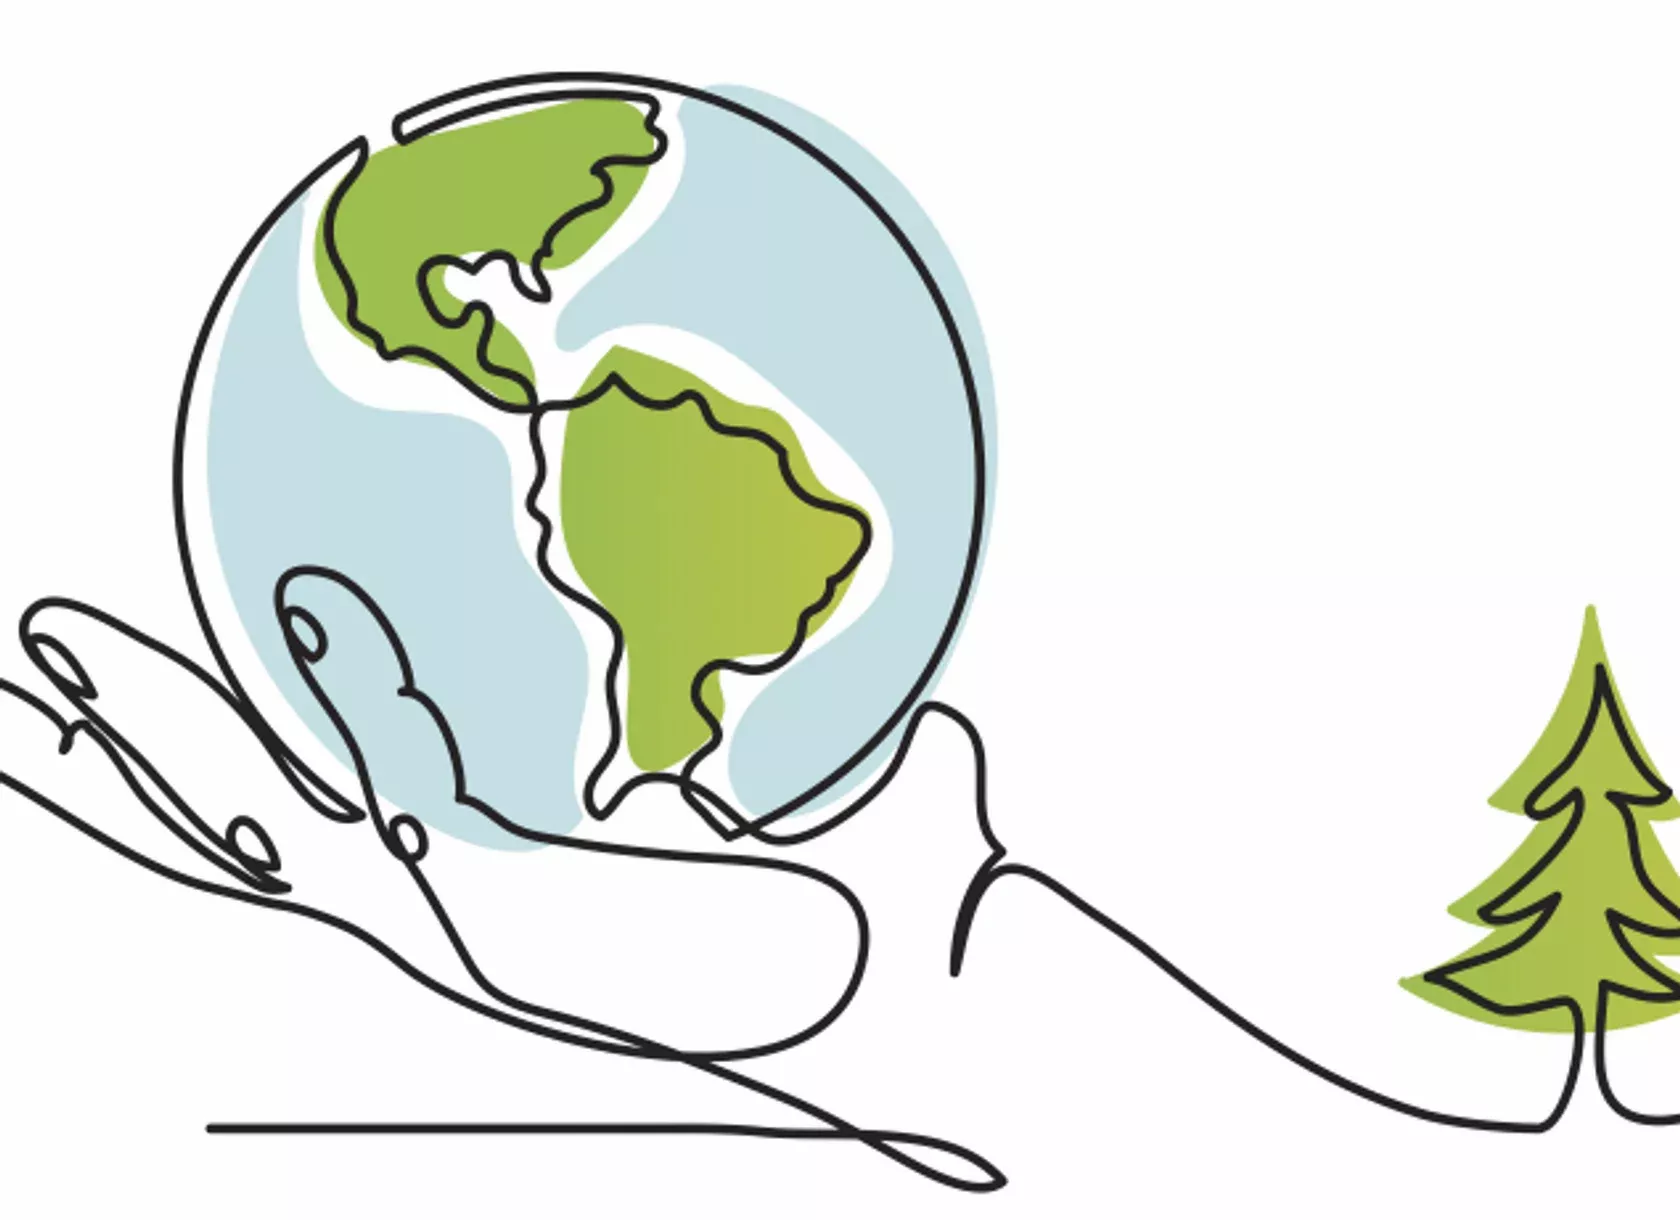 Klimaschutz - Zeichnung einer Hand, die den Globus hält. Die Kontinente sind grün.